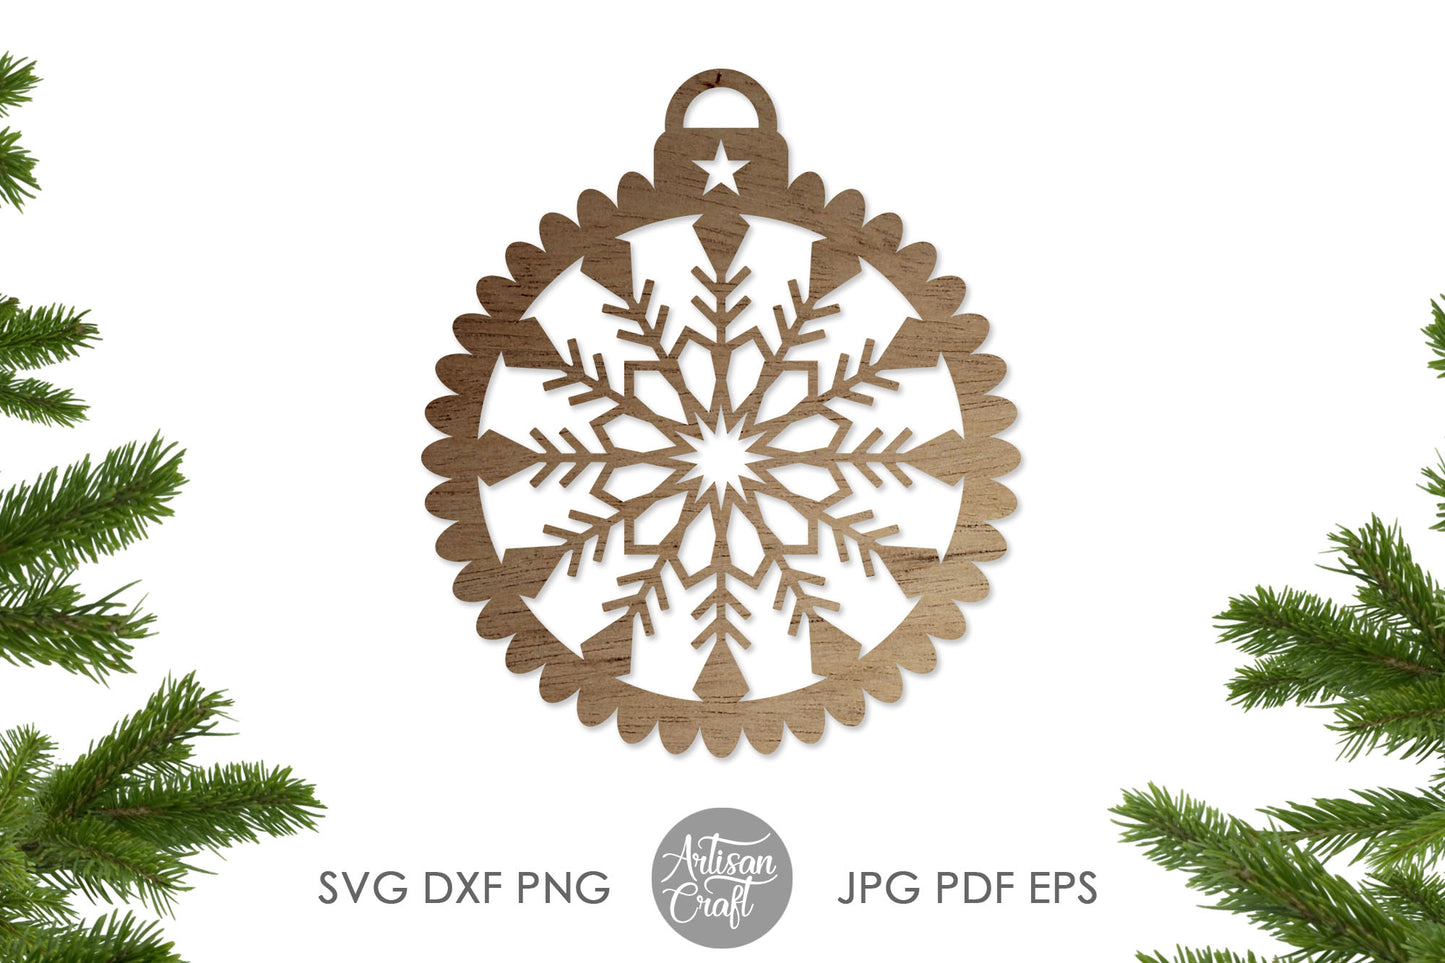 Snowflake Christmas ornament SVG